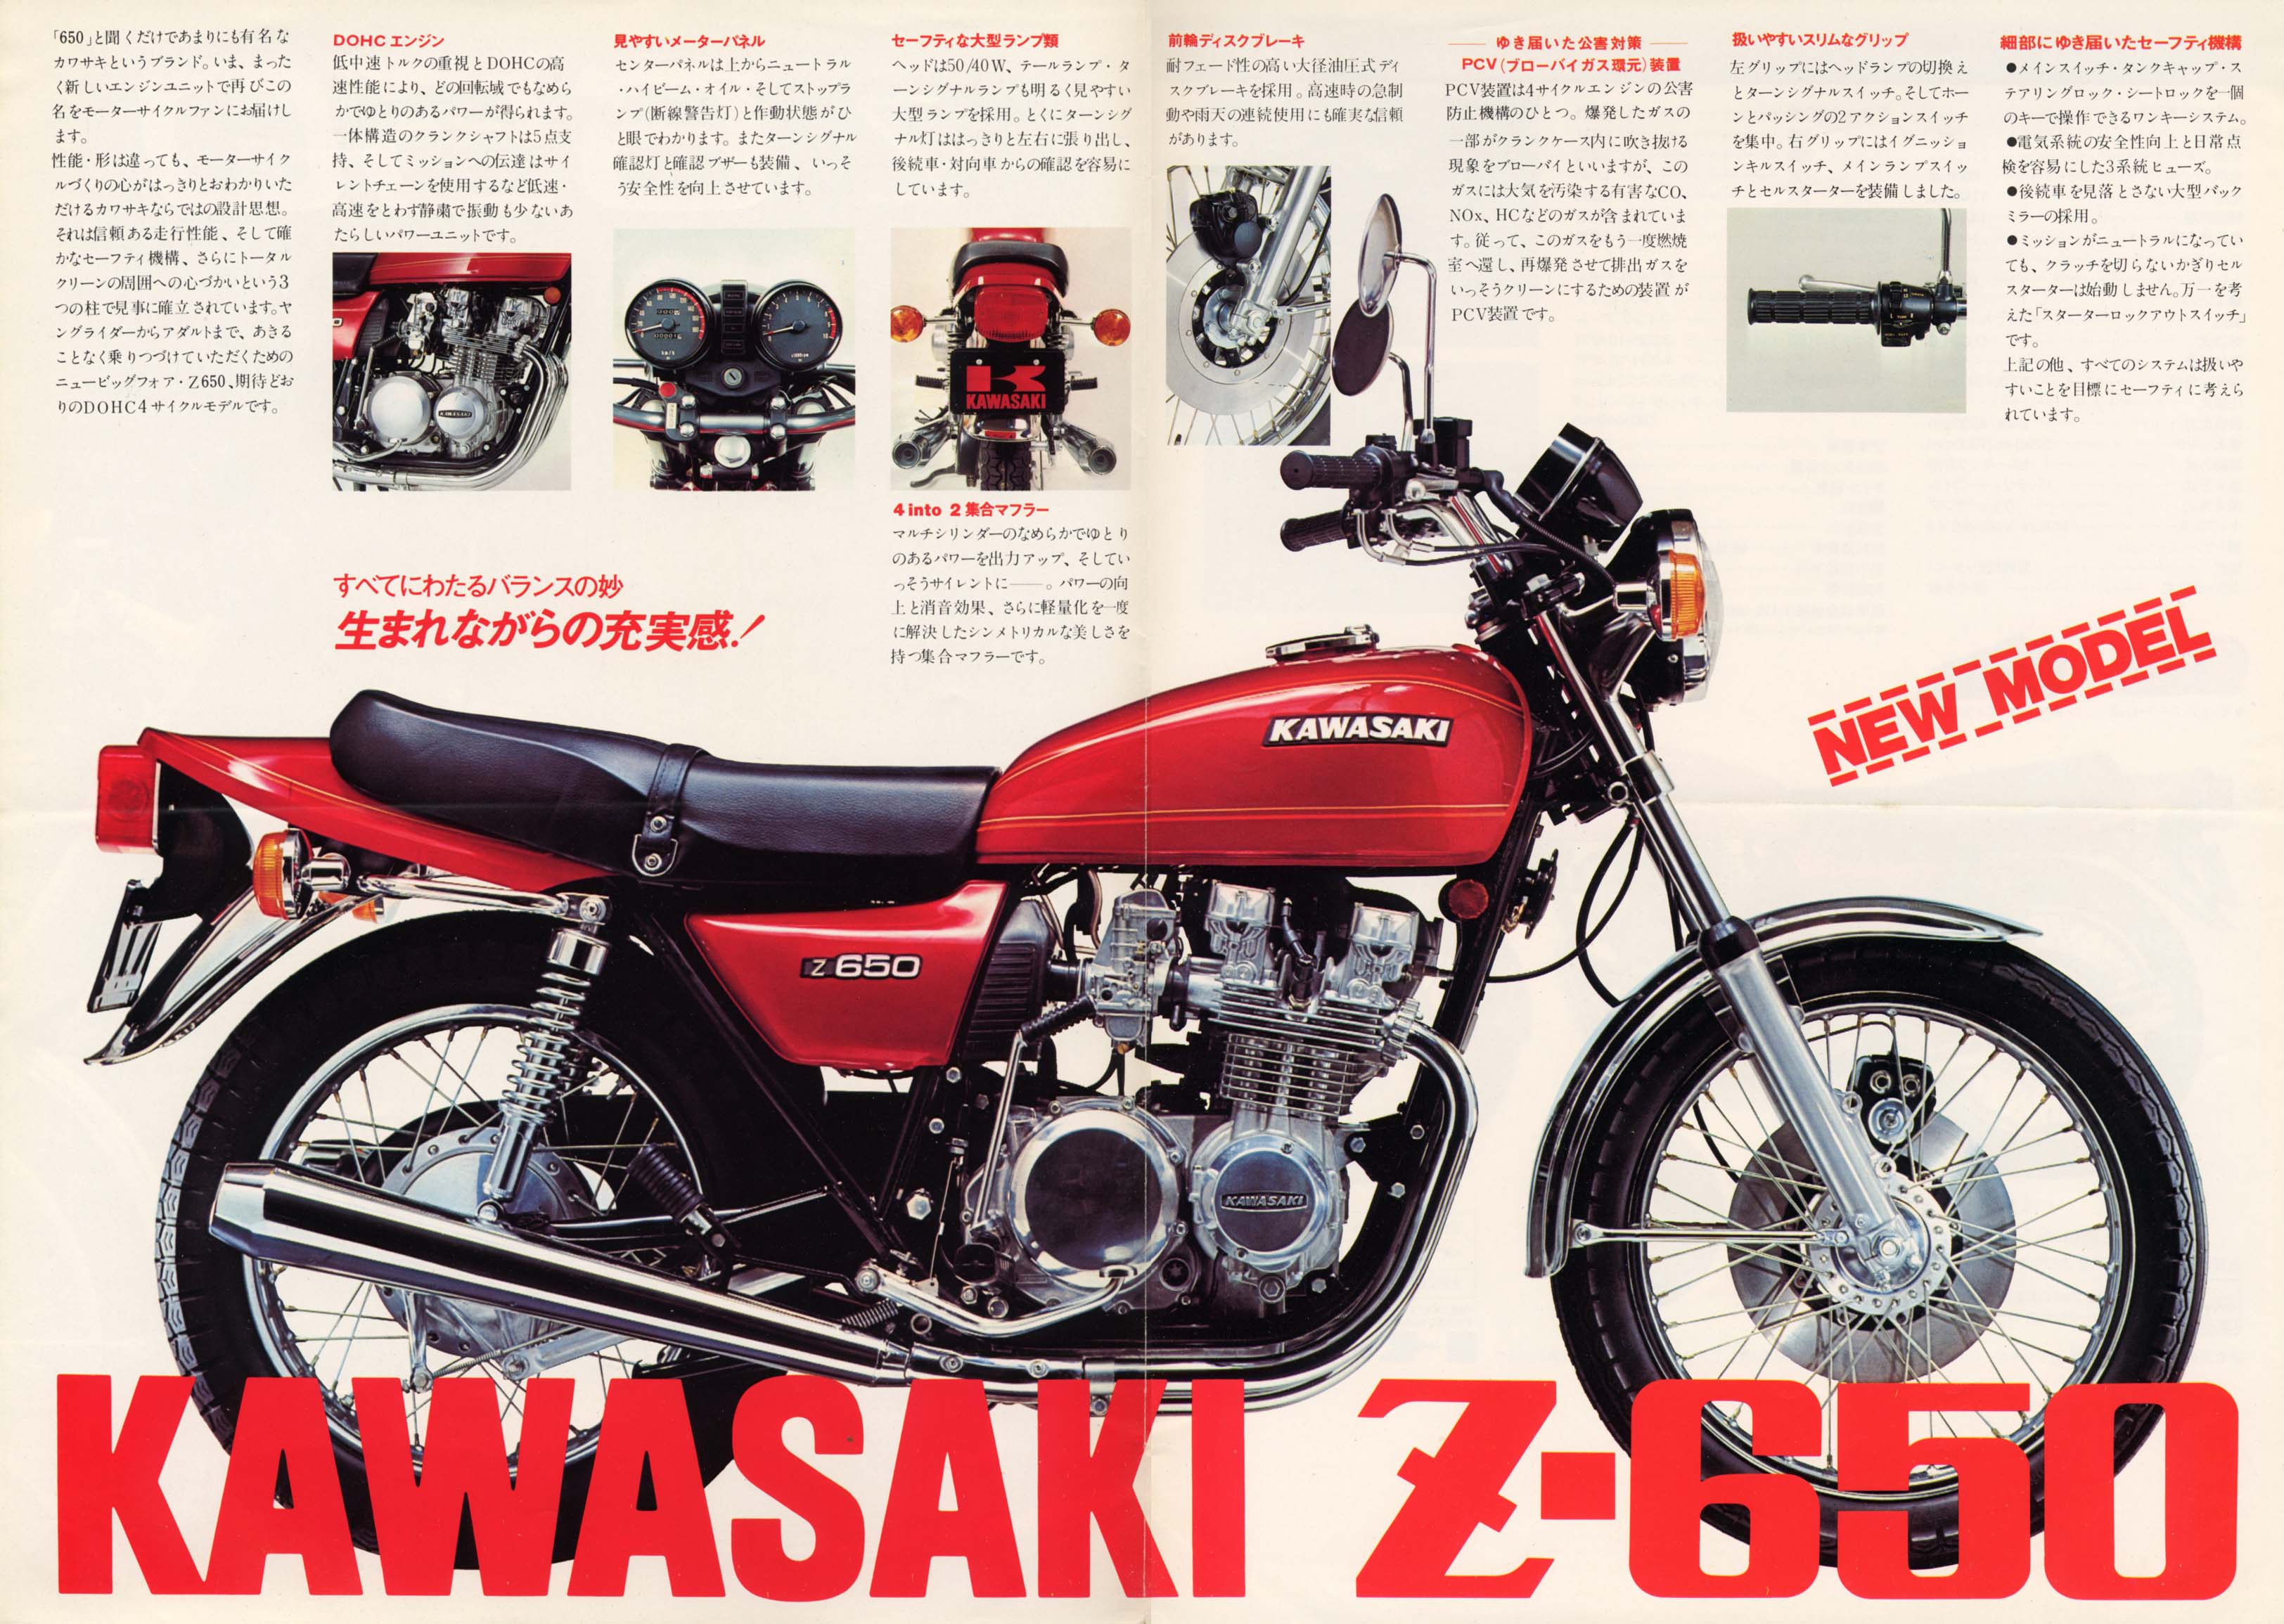 Kawasaki Z 650 1976 photo - 1